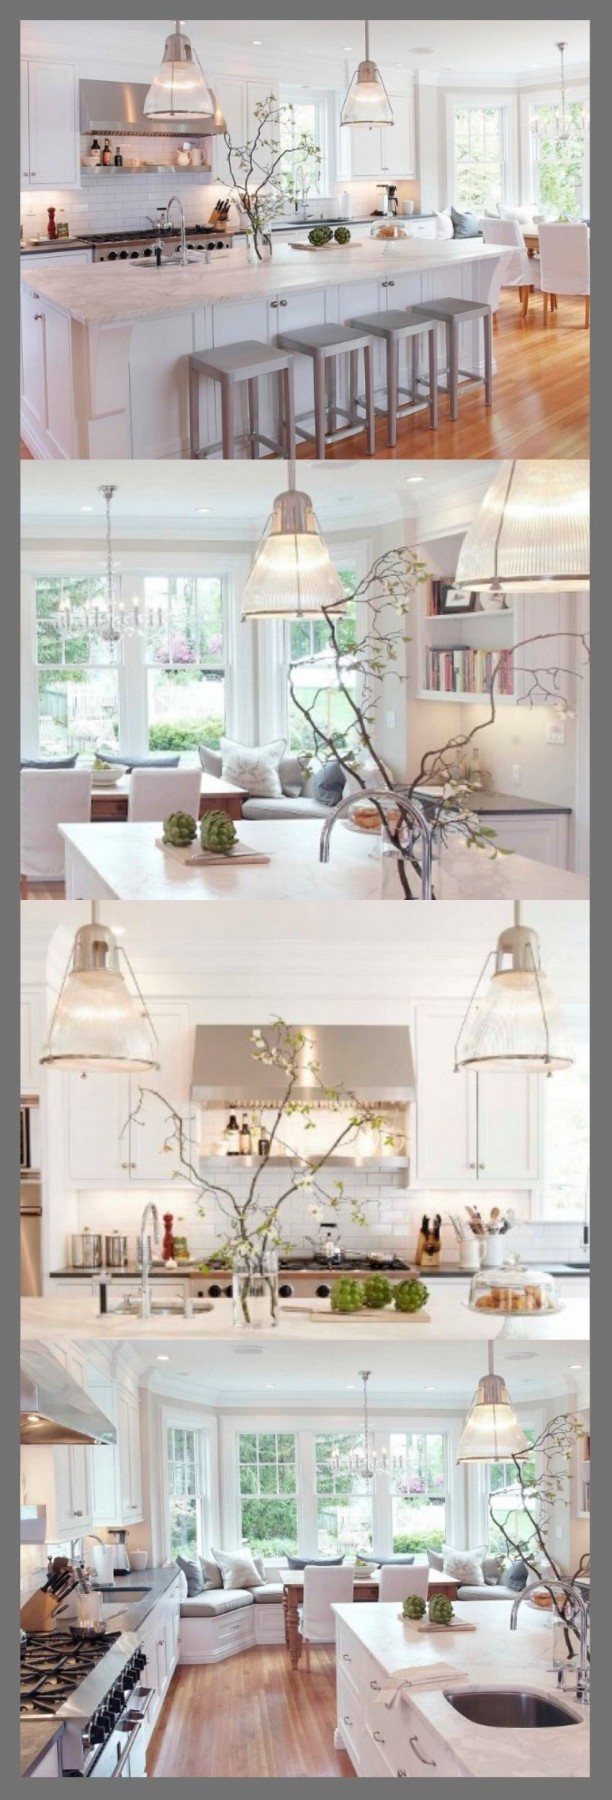 lighting fixtures for kitchen island